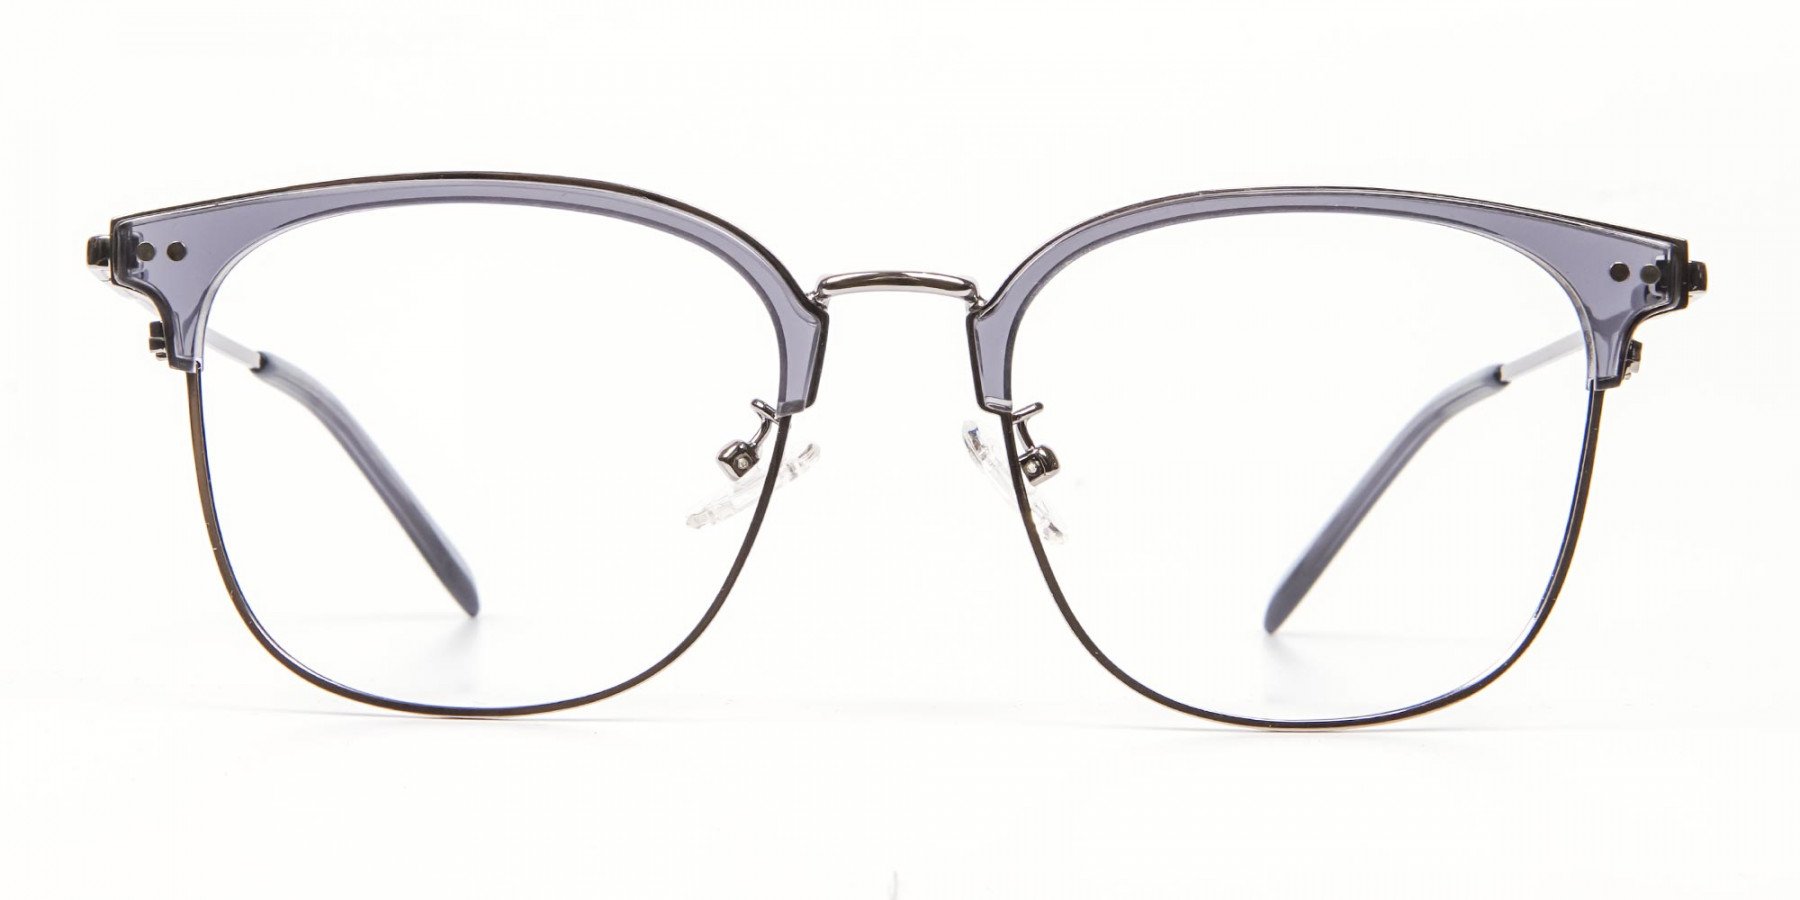 Square Framed Glasses - 1